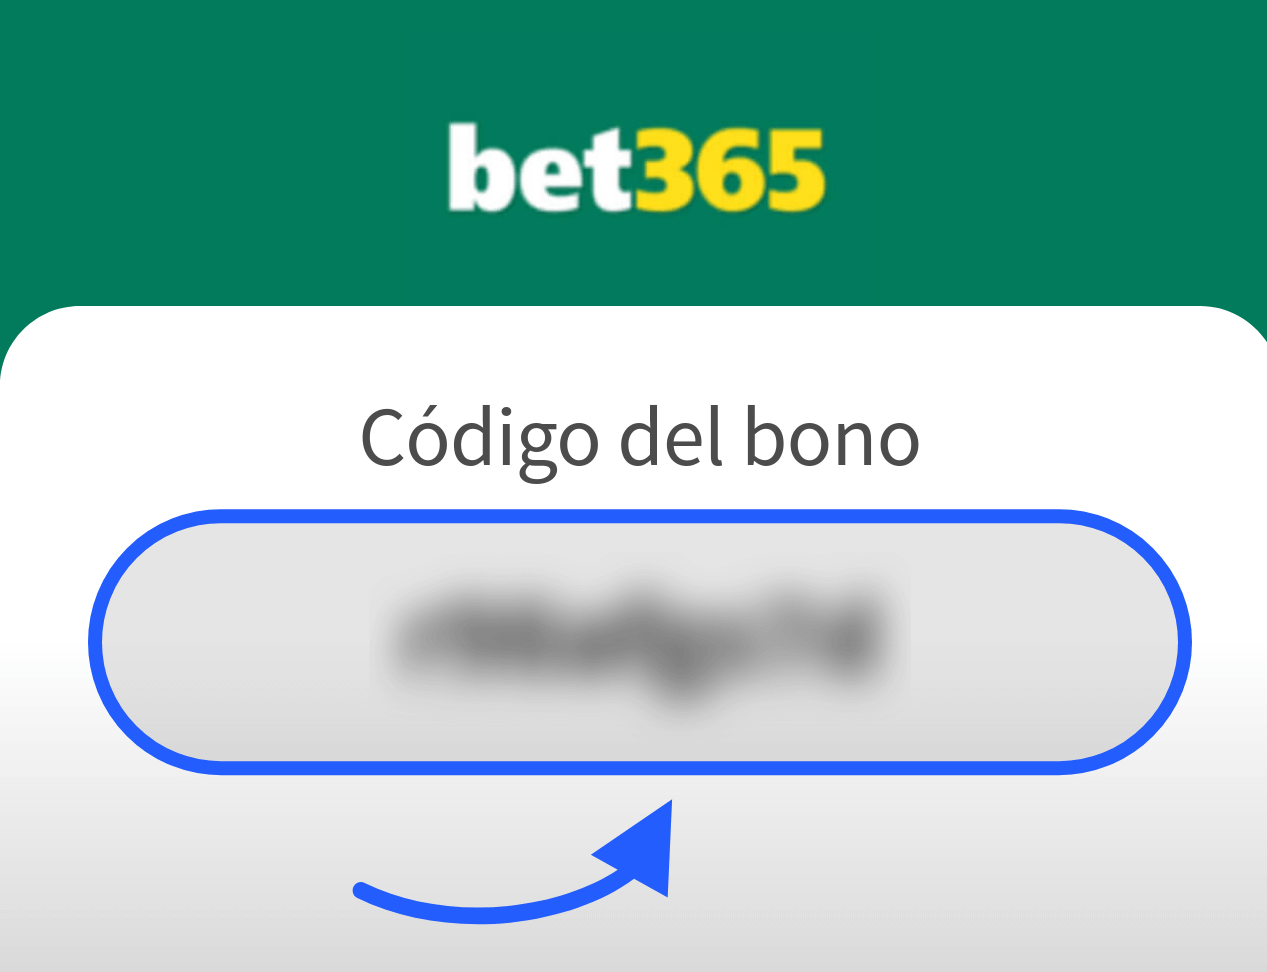 Código del bono bet365 Bolivia